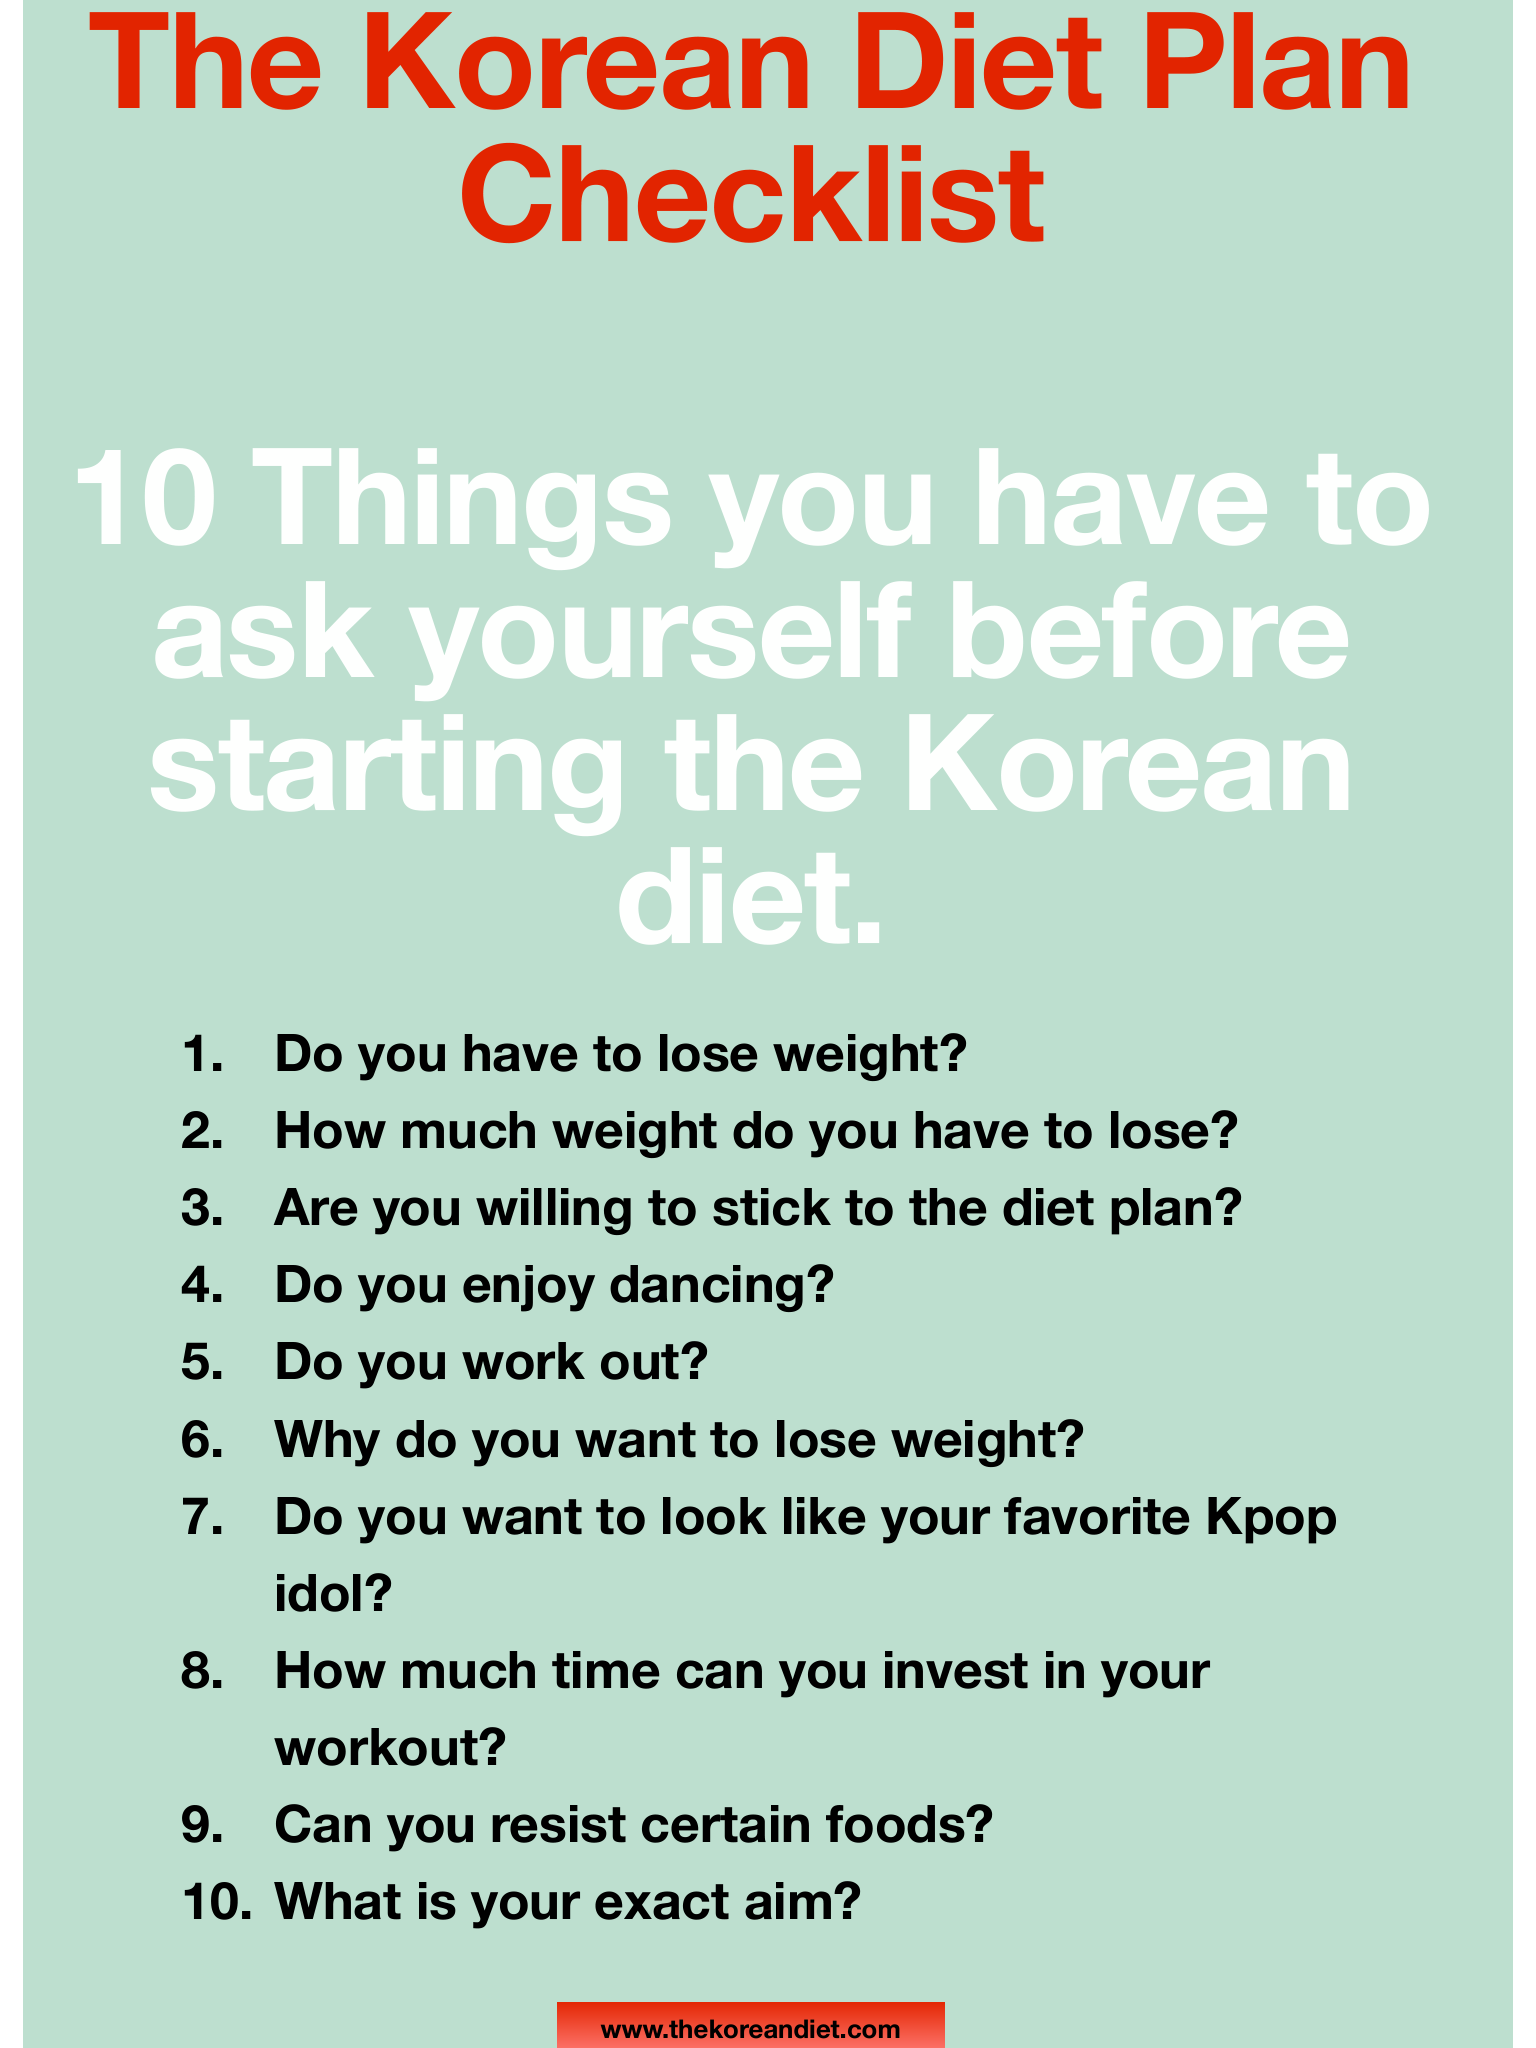 Korean Diet Plan Checklist The Korean Diet